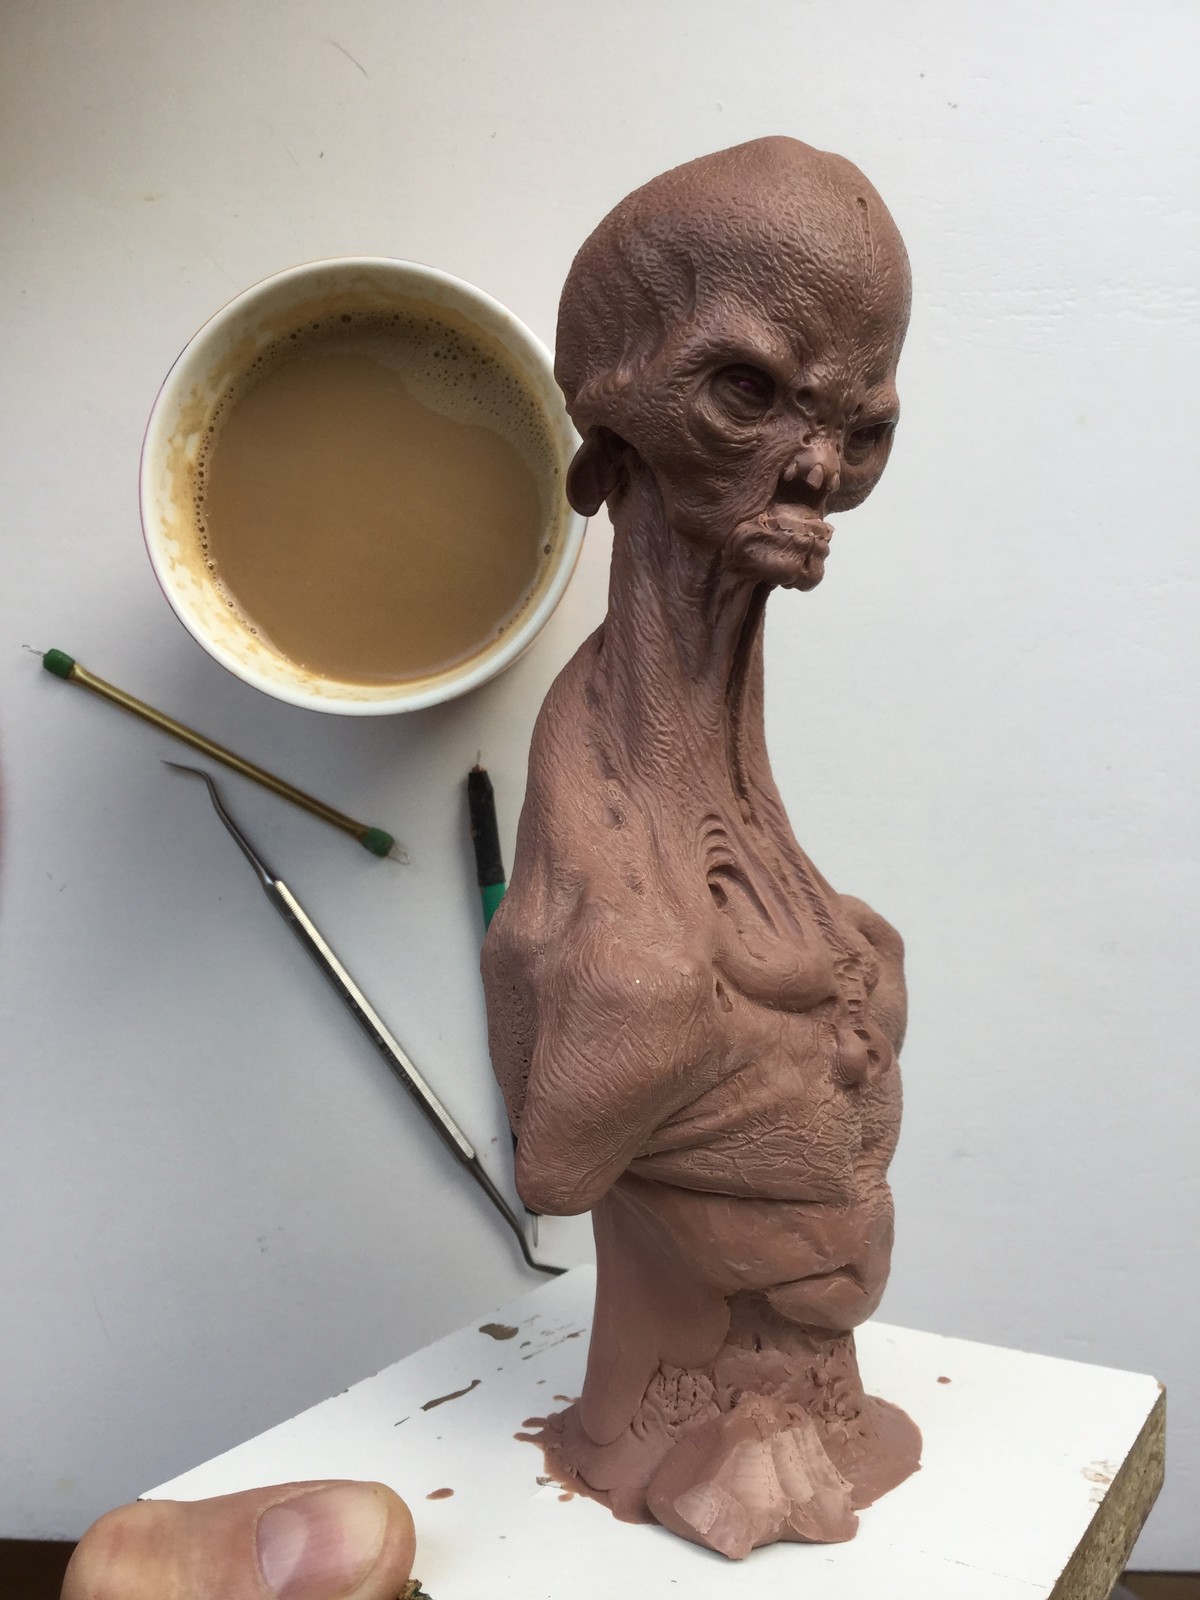 Alien/monster clay/work in progress